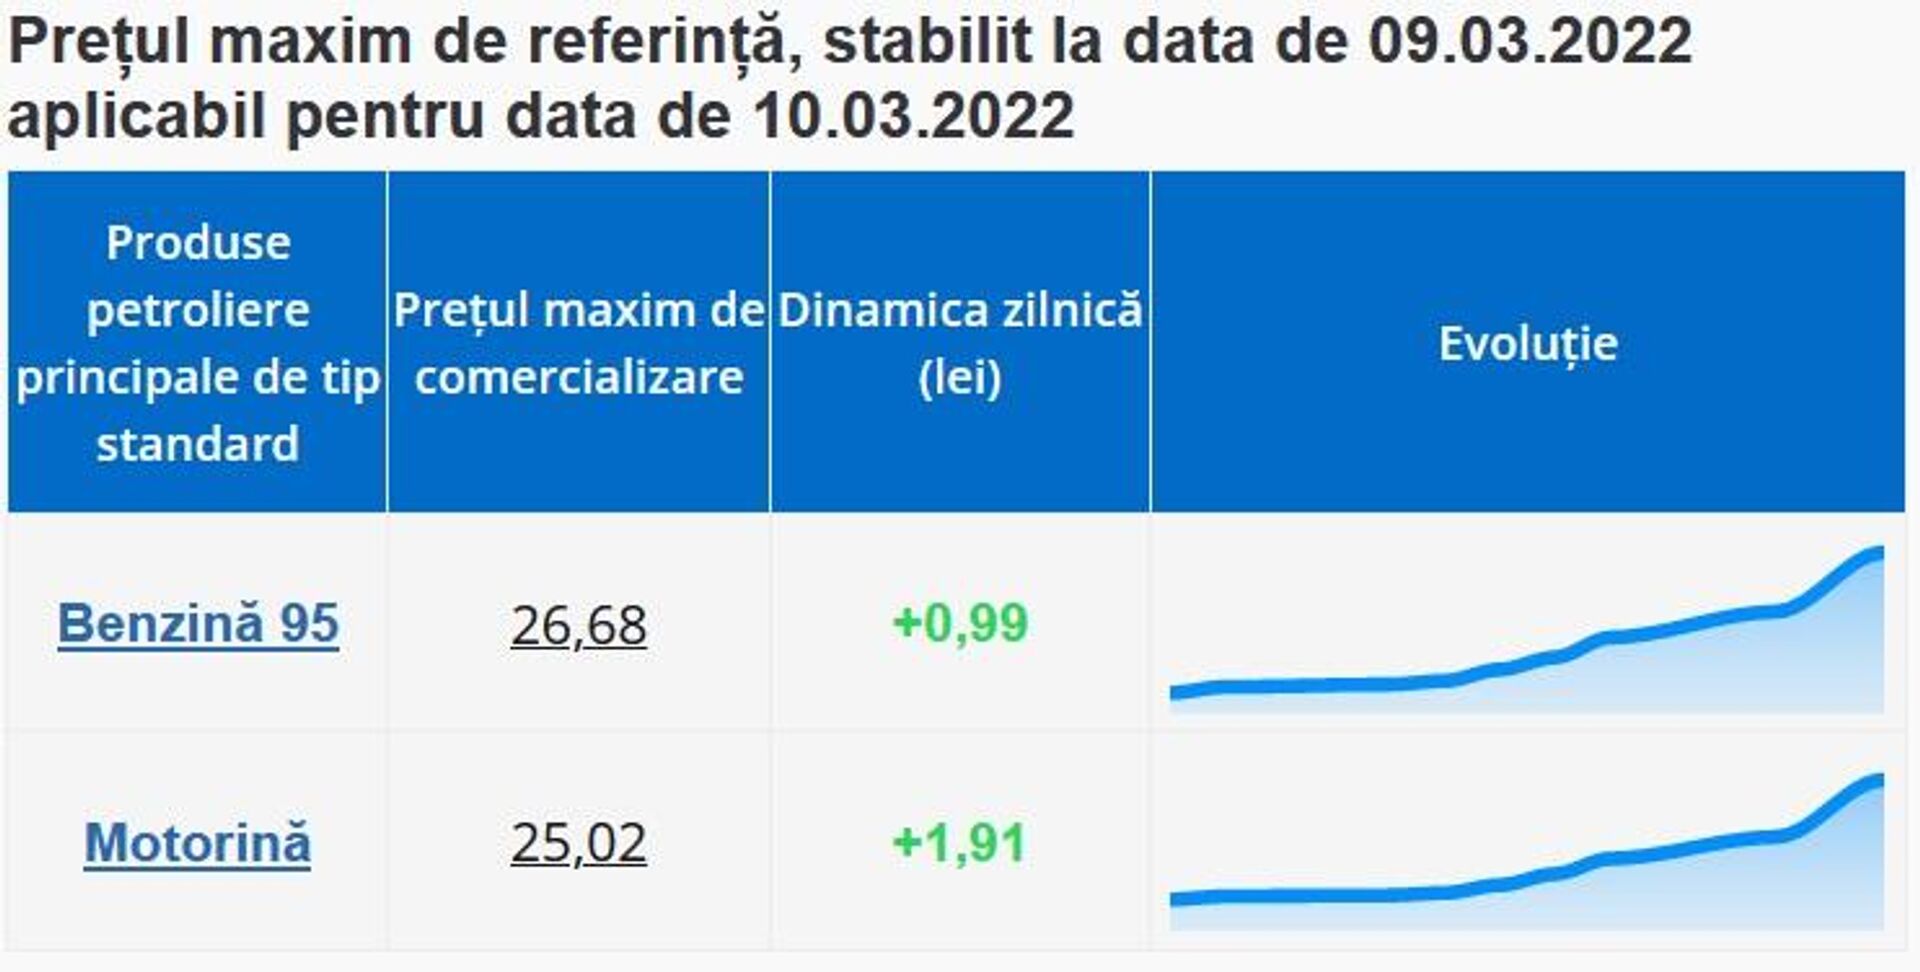 Prețul maxim de referință, stabilit la data de 09.03.2022 aplicabil pentru data de 10.03.2022 - Sputnik Moldova, 1920, 09.03.2022